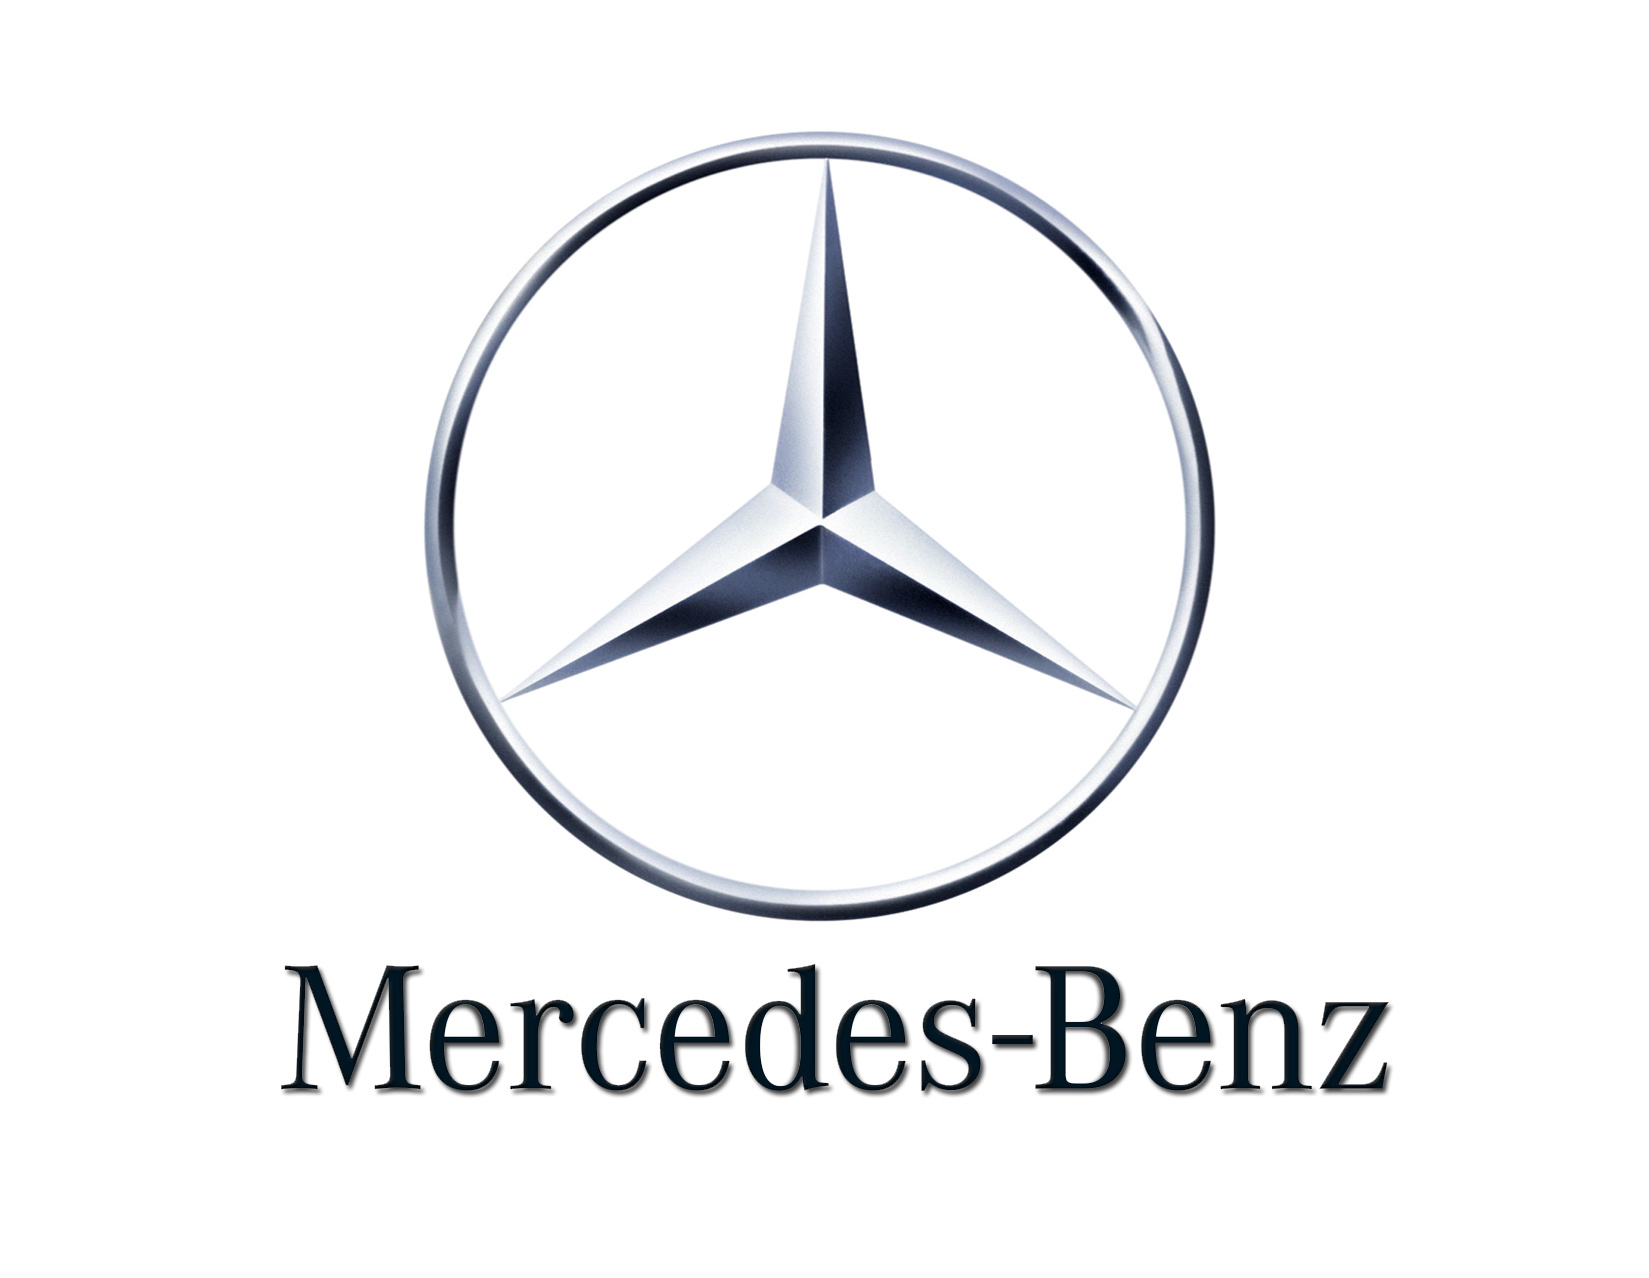 Bảng giá các loại lốp dành cho ô tô Mercedes cập nhật tháng 5/2015